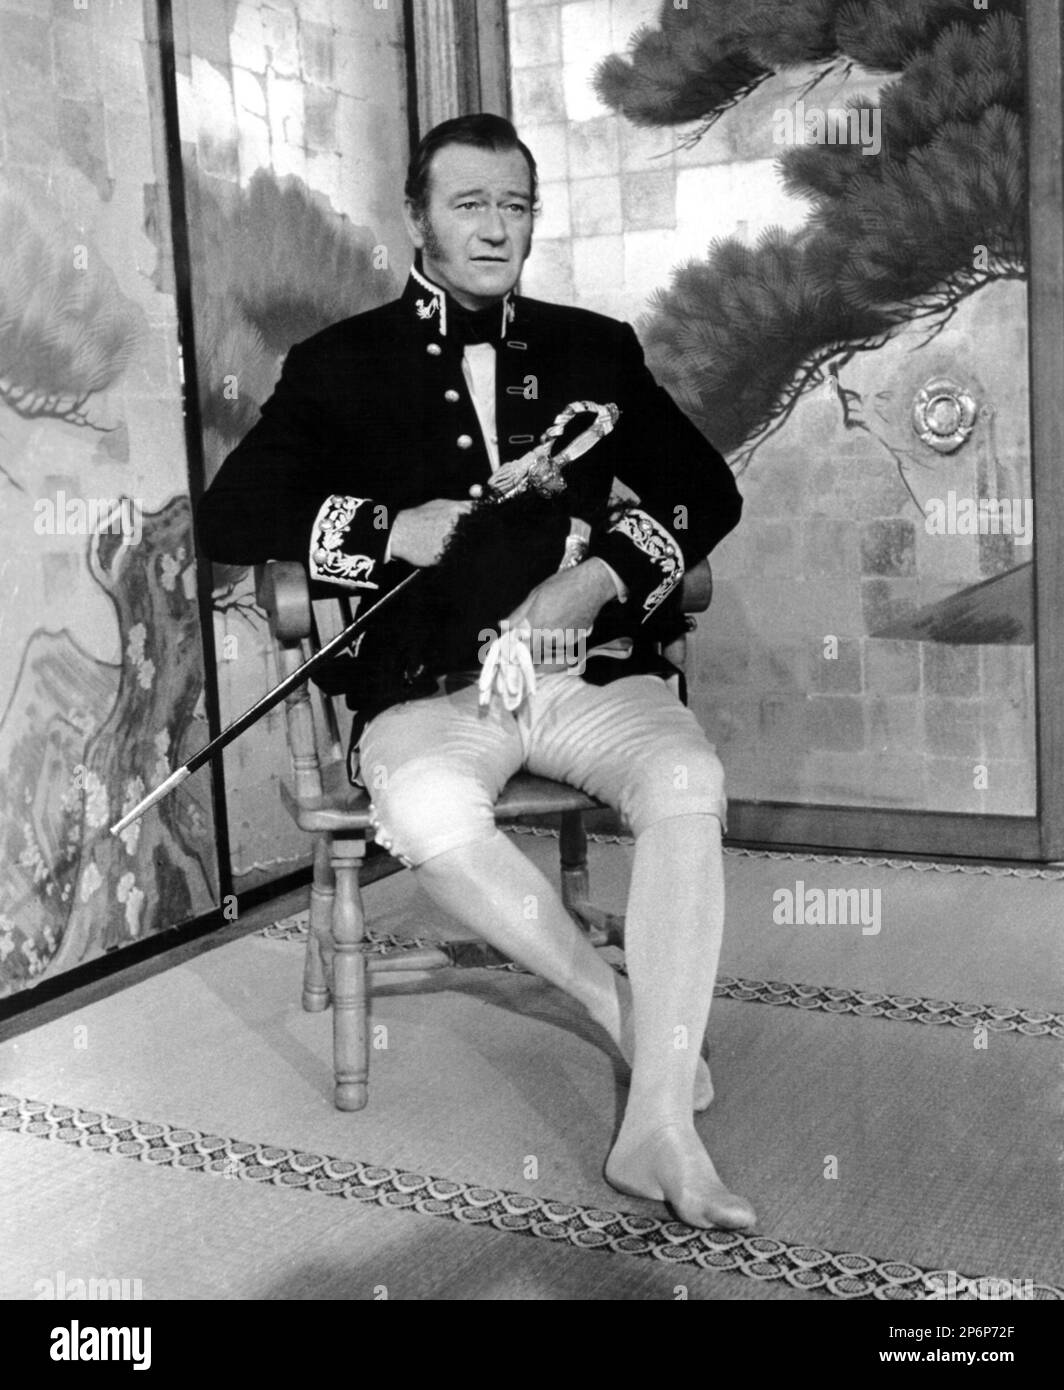 1958: Le célèbre acteur de cinéma JOHN WAYNE dans un cliché pubblicavitaire pour LE BARBARE ET LA GEISHA ( il barbaro e la geisha ) par John Huston , d'un roman d'Ellis St. Joseph - CINÉMA - ATTORE CINEMATOGRAFICO - FILM - spada - épée - piédi scalzi - pieds nus --- Archivio GBB Banque D'Images